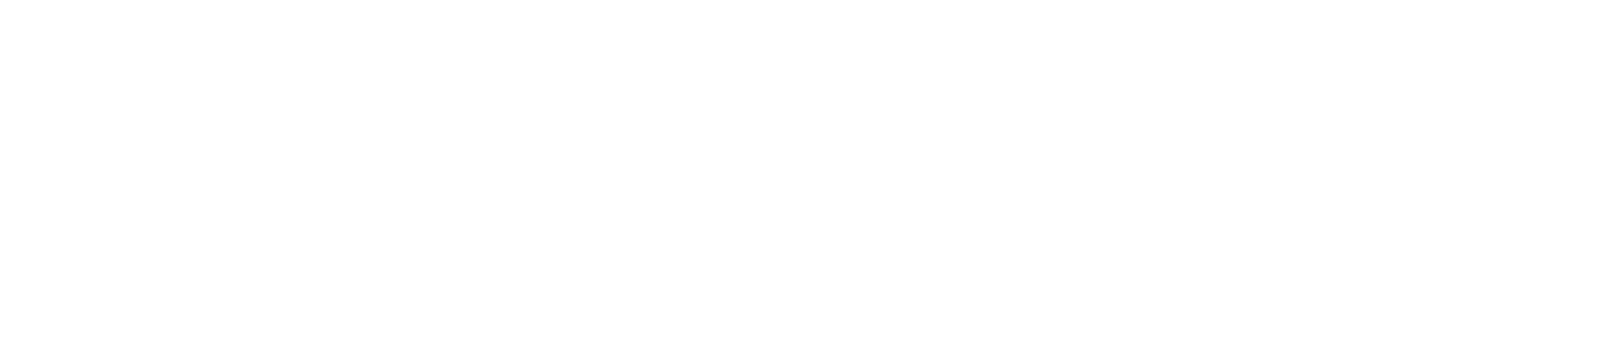 ProShares logo large for dark backgrounds (transparent PNG)